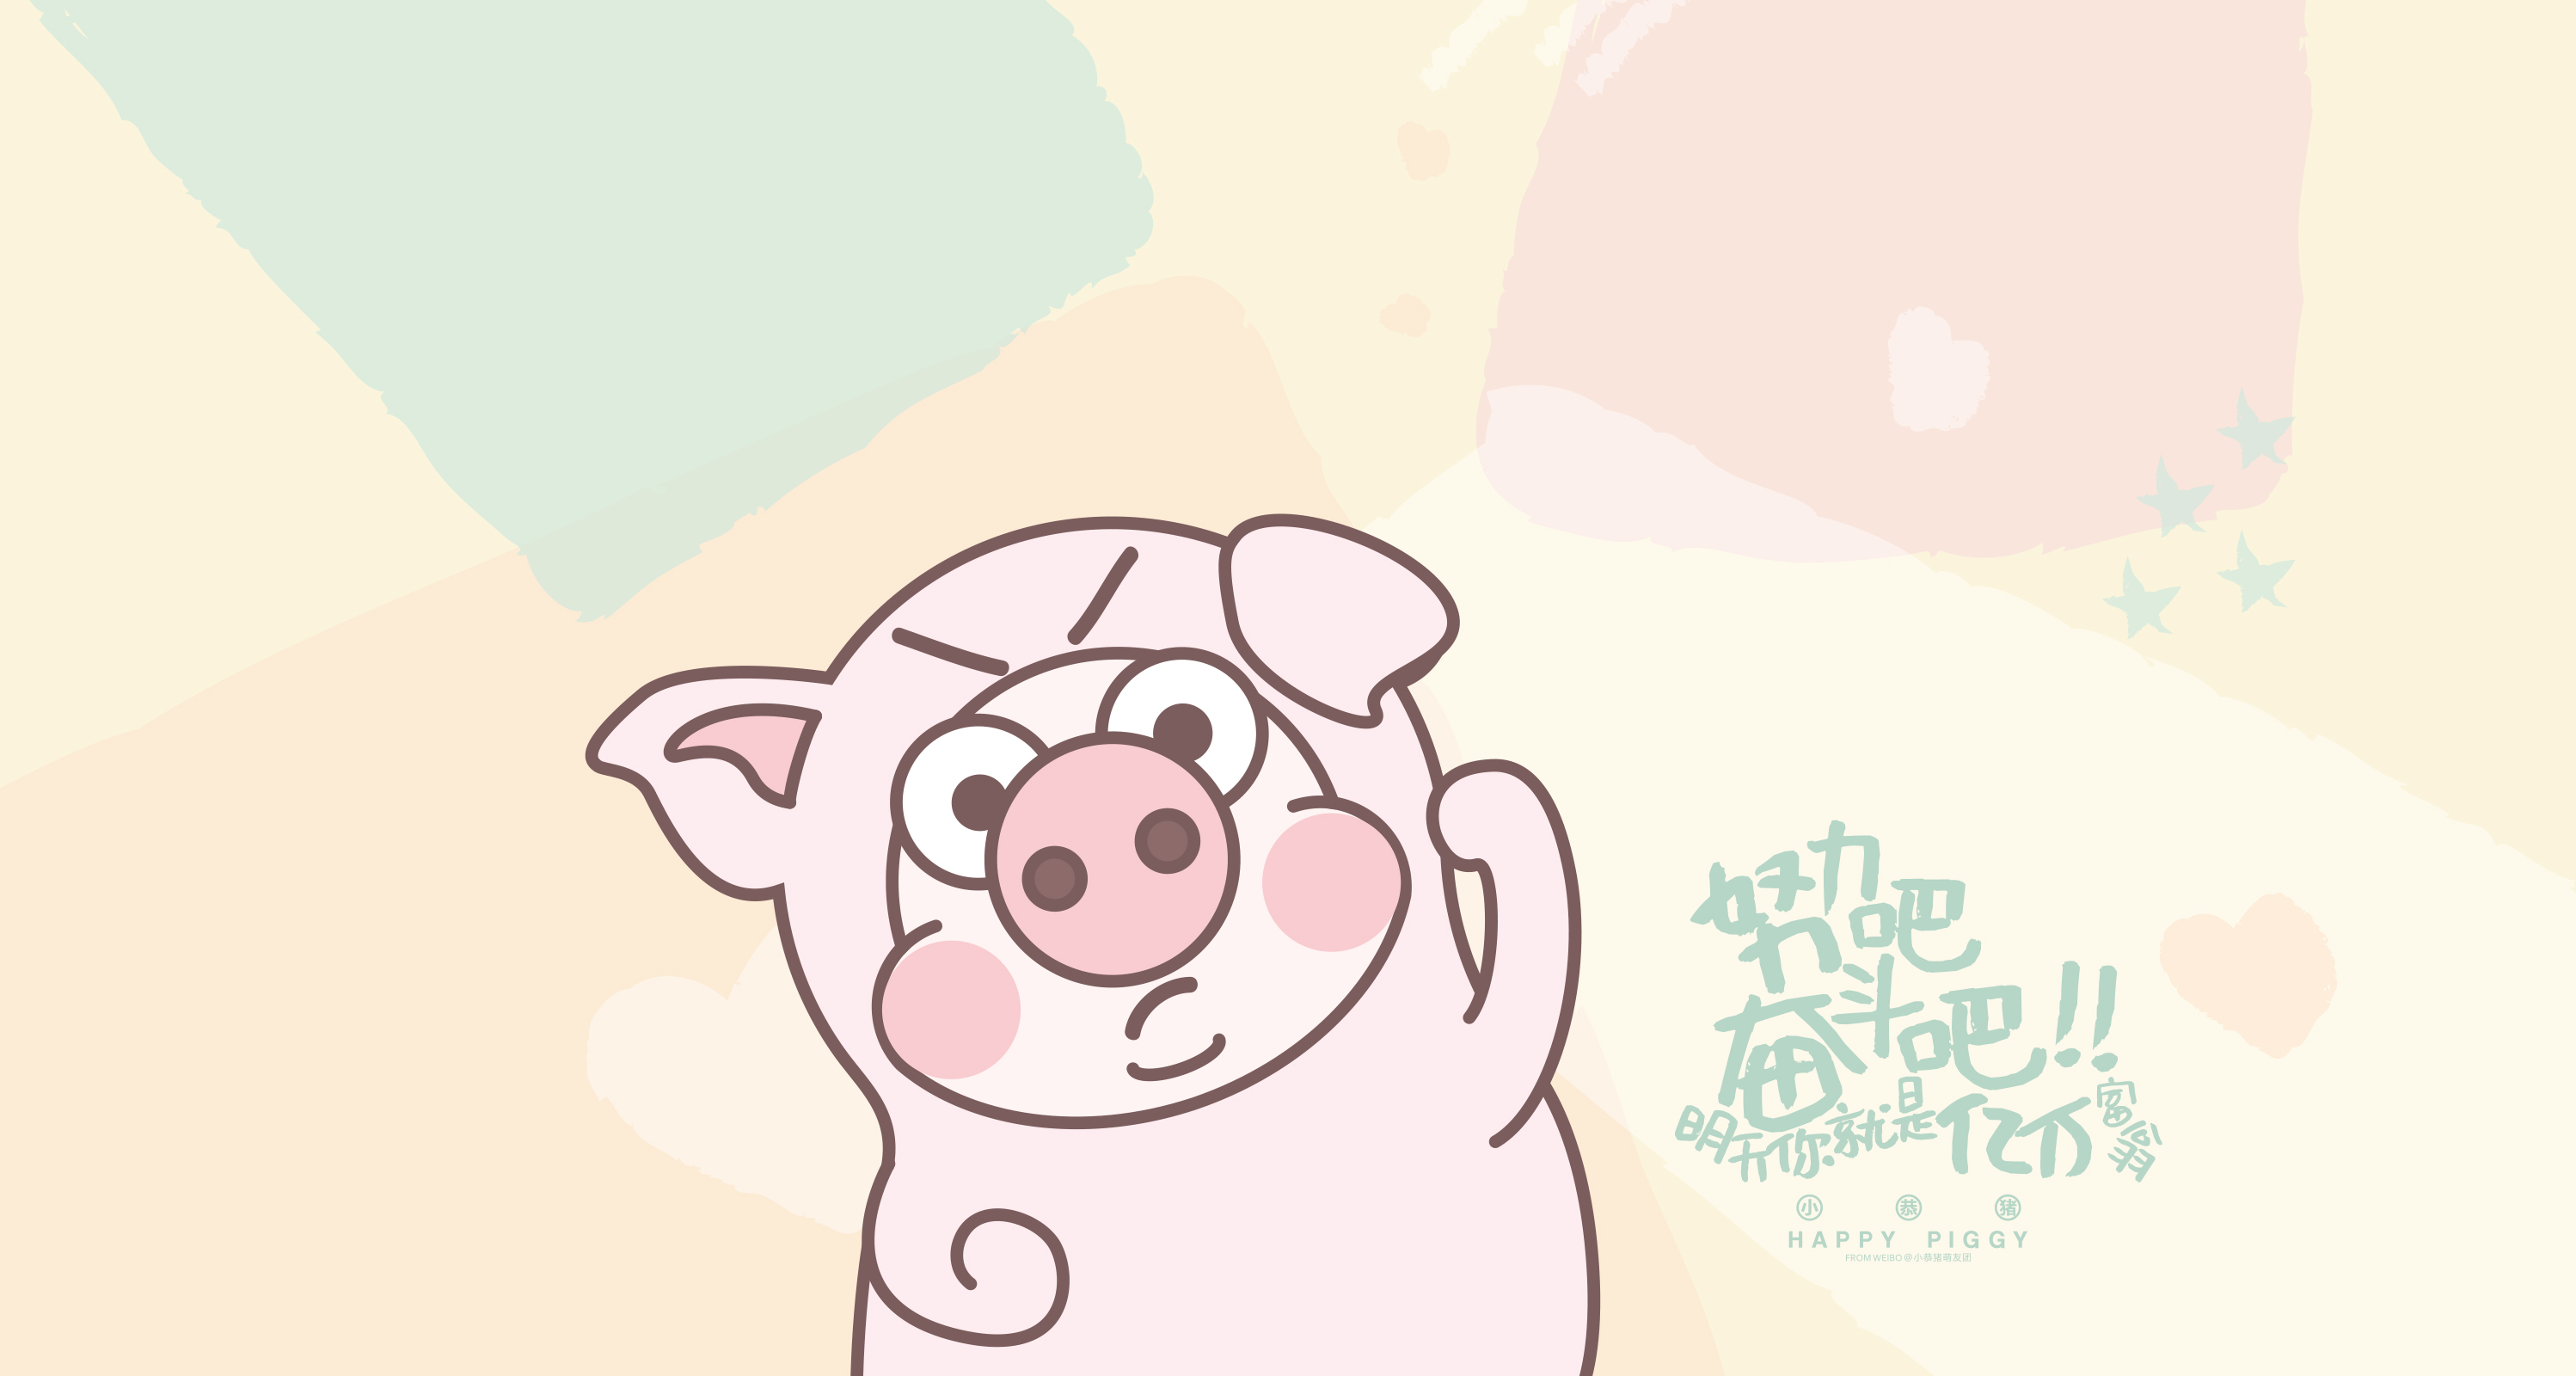 动画片恼怒的猪的贴纸 向量例证. 插画 包括有 徒手画, 古怪, 自由, 动物, 标签, 现有量, 棍子 - 149251112